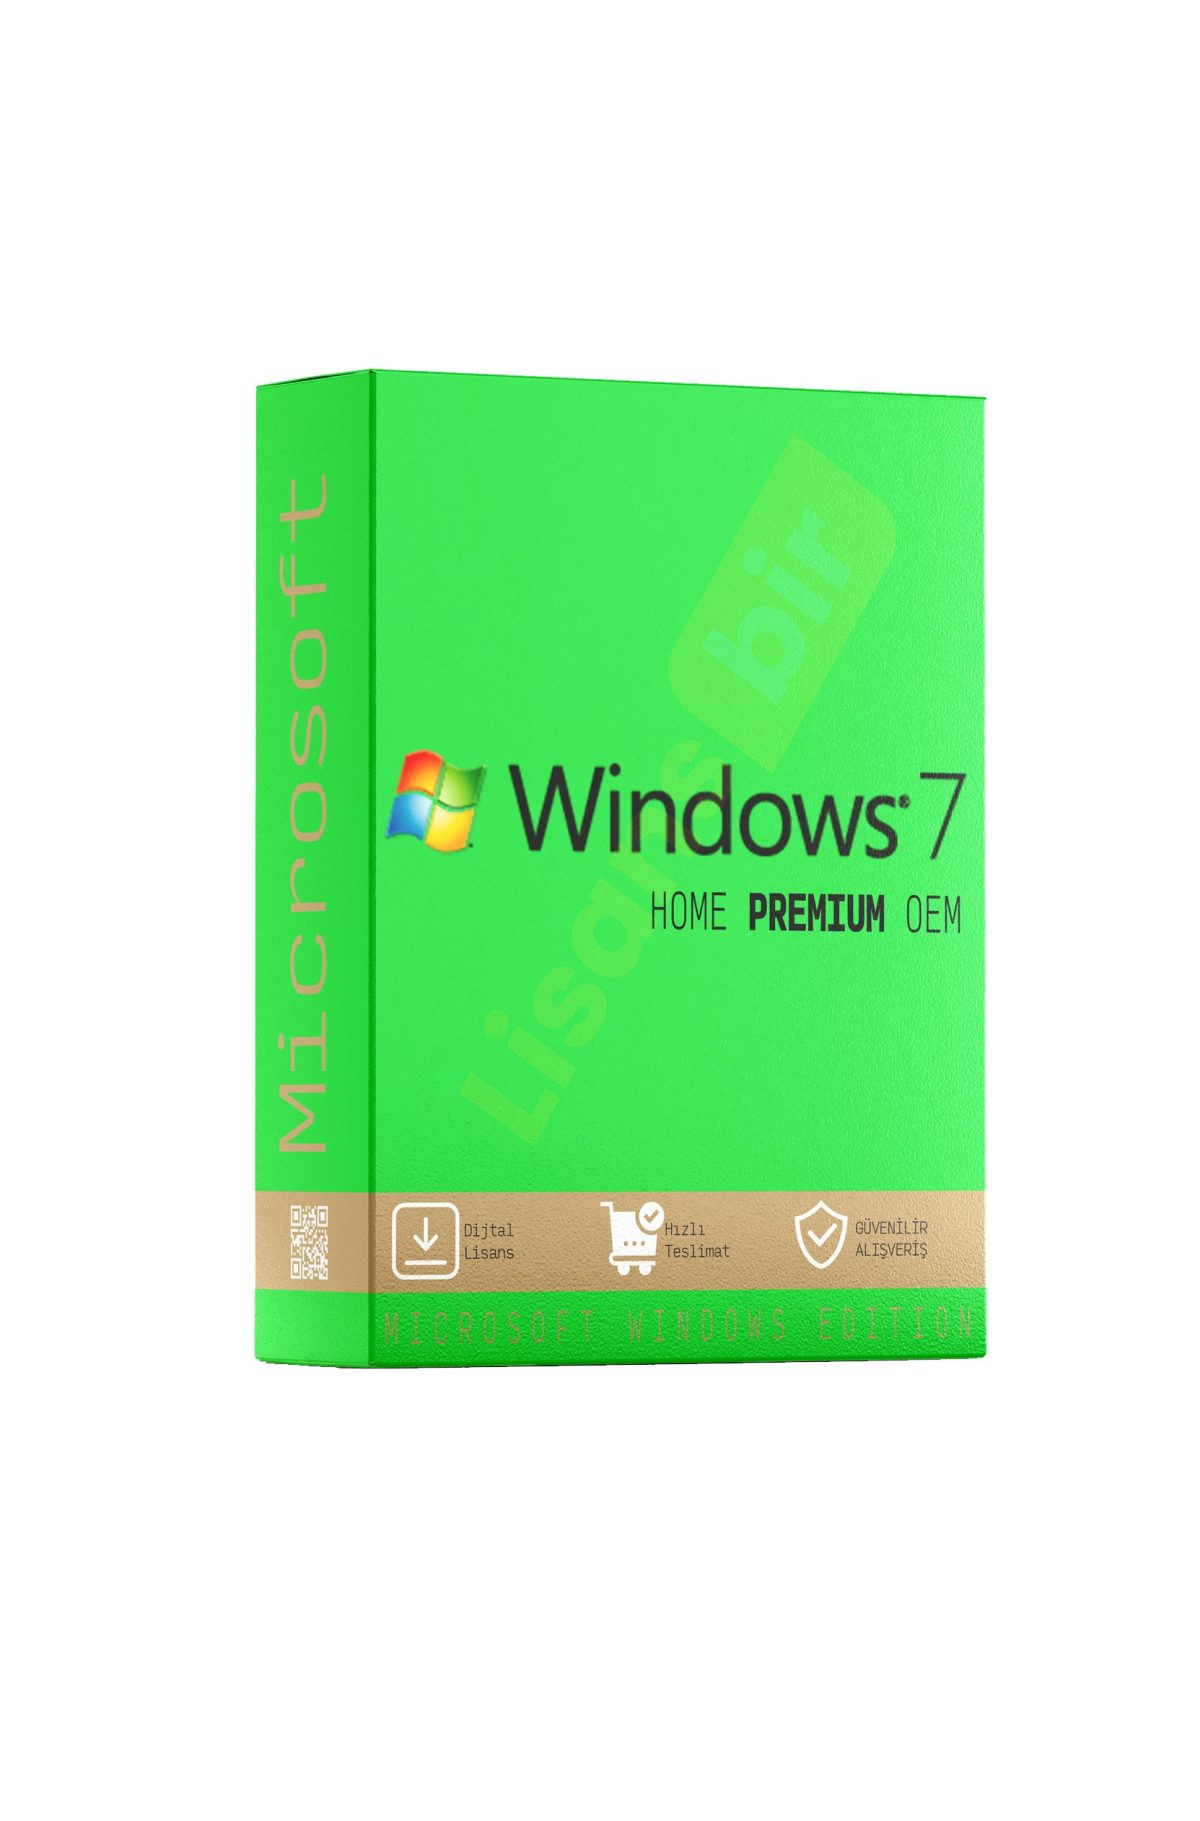 Windows 7 Home Premium OEM özellikleri ve çekici yönleri hakkında daha fazla bilgi için Lisansbir ürün sayfasını ziyaret edebilirsiniz.